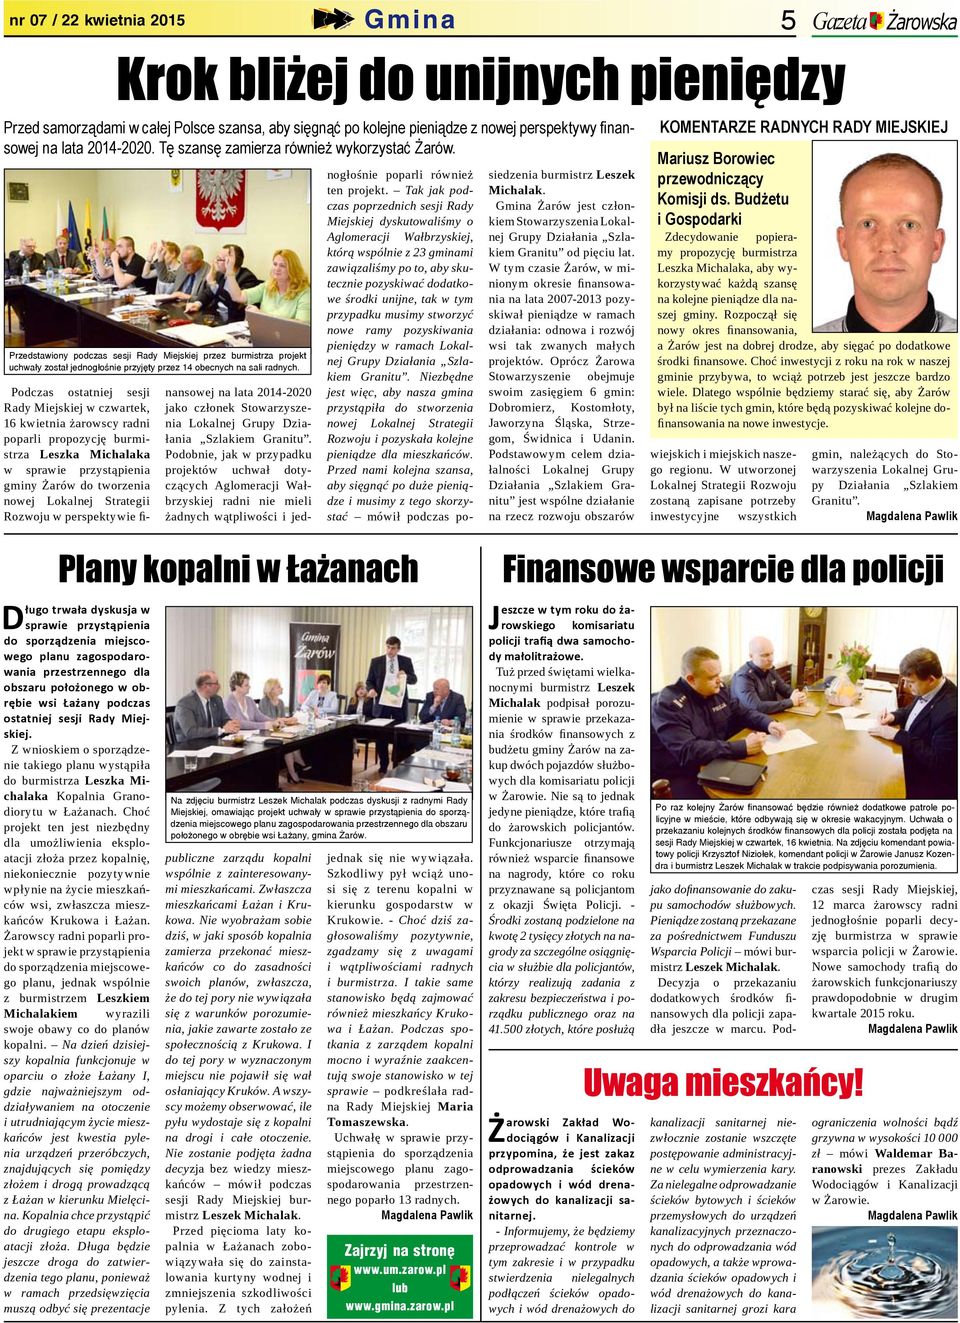 Podczas ostatniej sesji Rady Miejskiej w czwartek, 16 kwietnia żarowscy radni poparli propozycję burmistrza Leszka Michalaka w sprawie przystąpienia gminy Żarów do tworzenia nowej Lokalnej Strategii